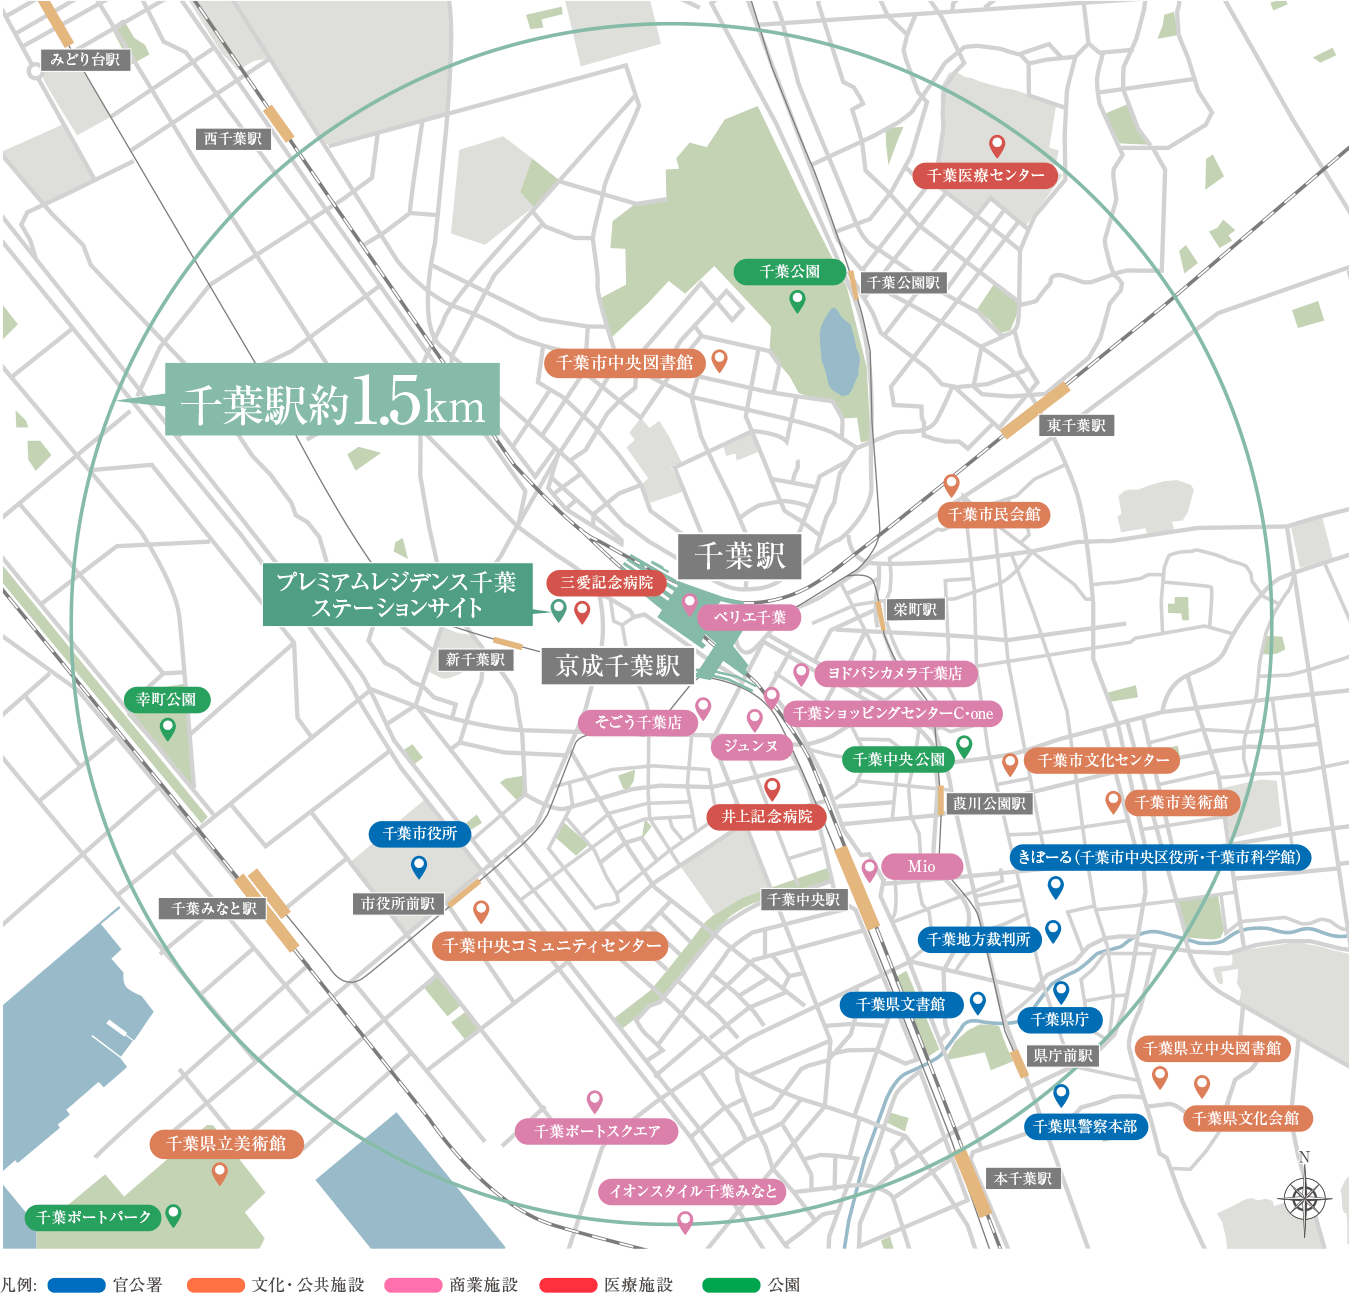 千葉駅約1.5km圏主要施設マップ